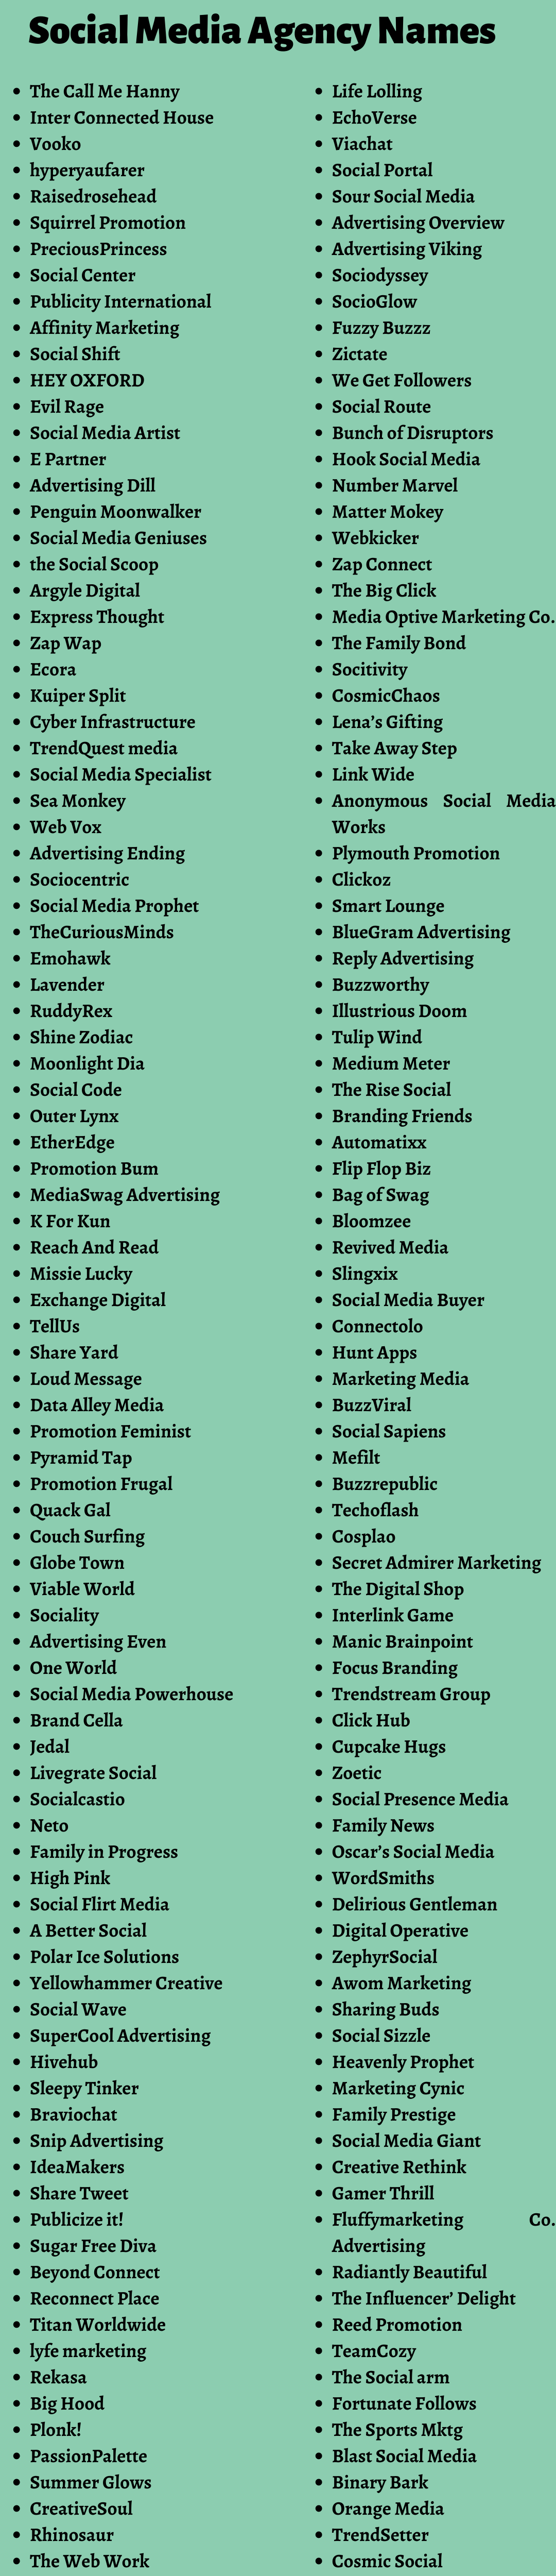 Social Media Agency Names